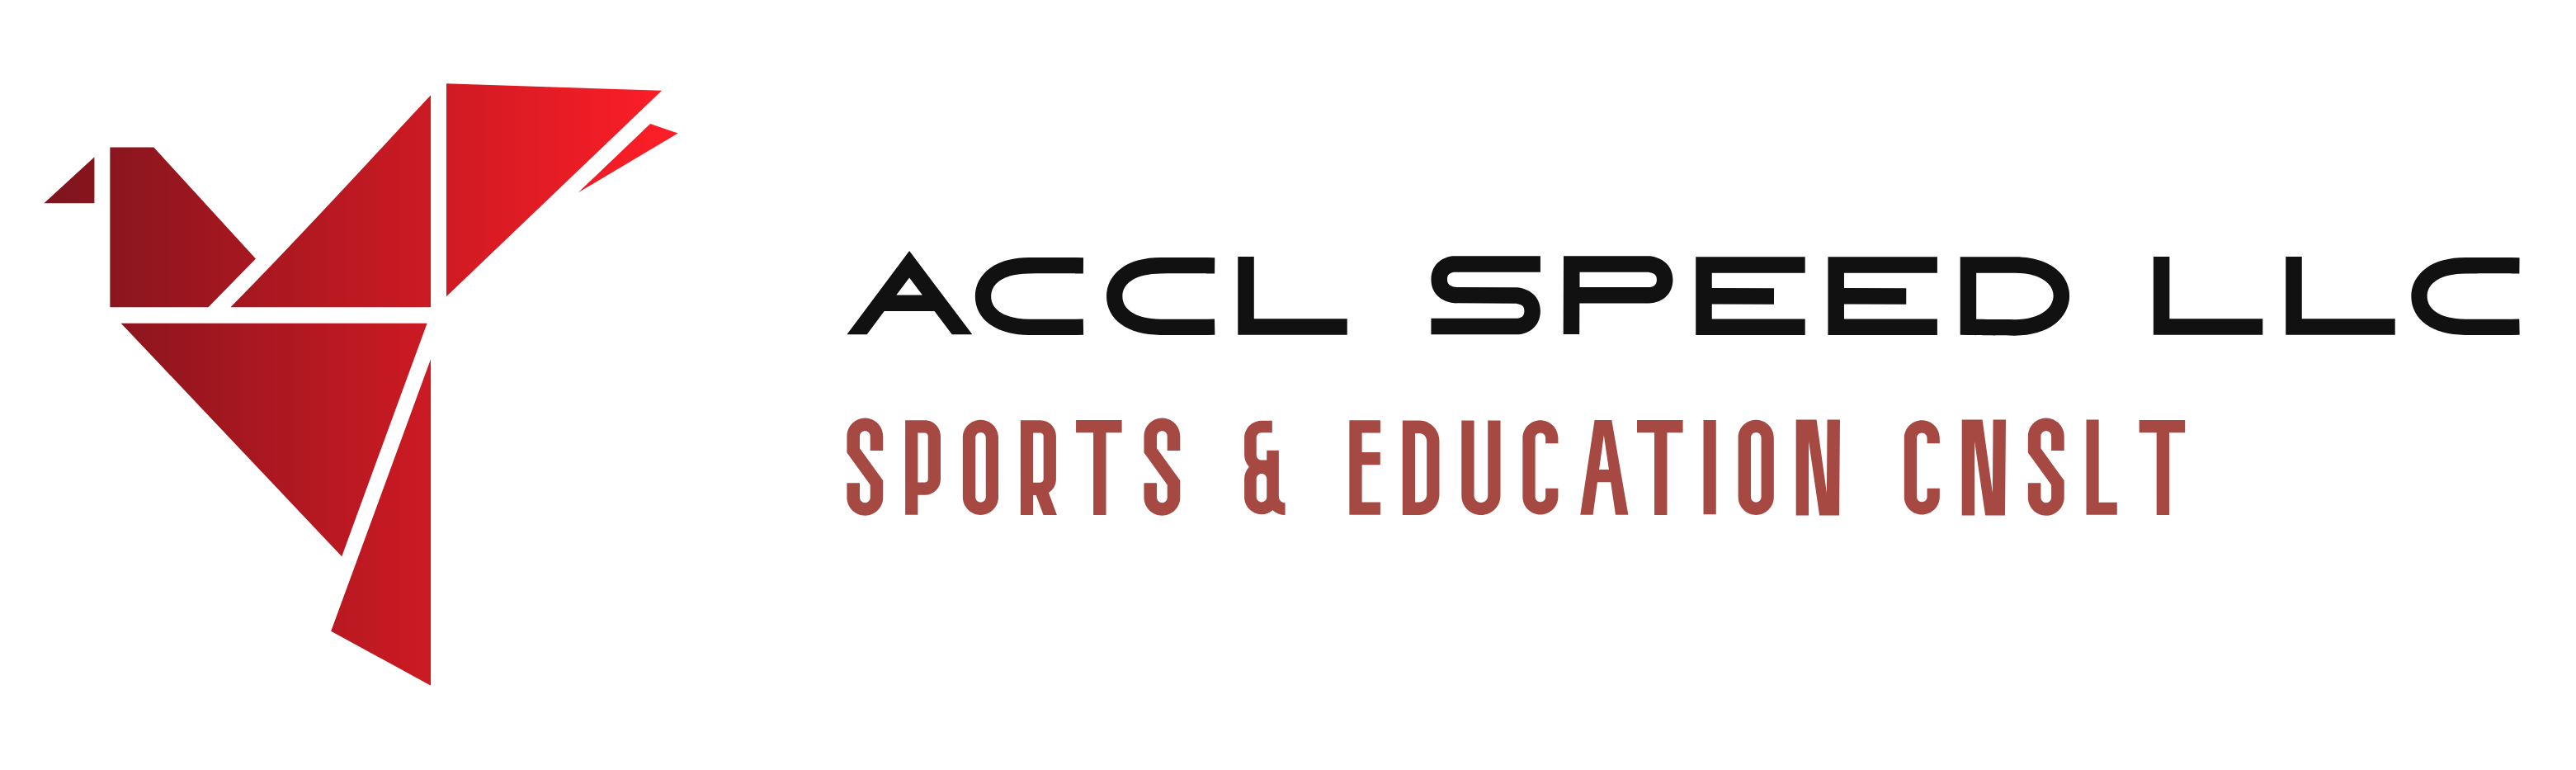 ACCL SPEED, LLC